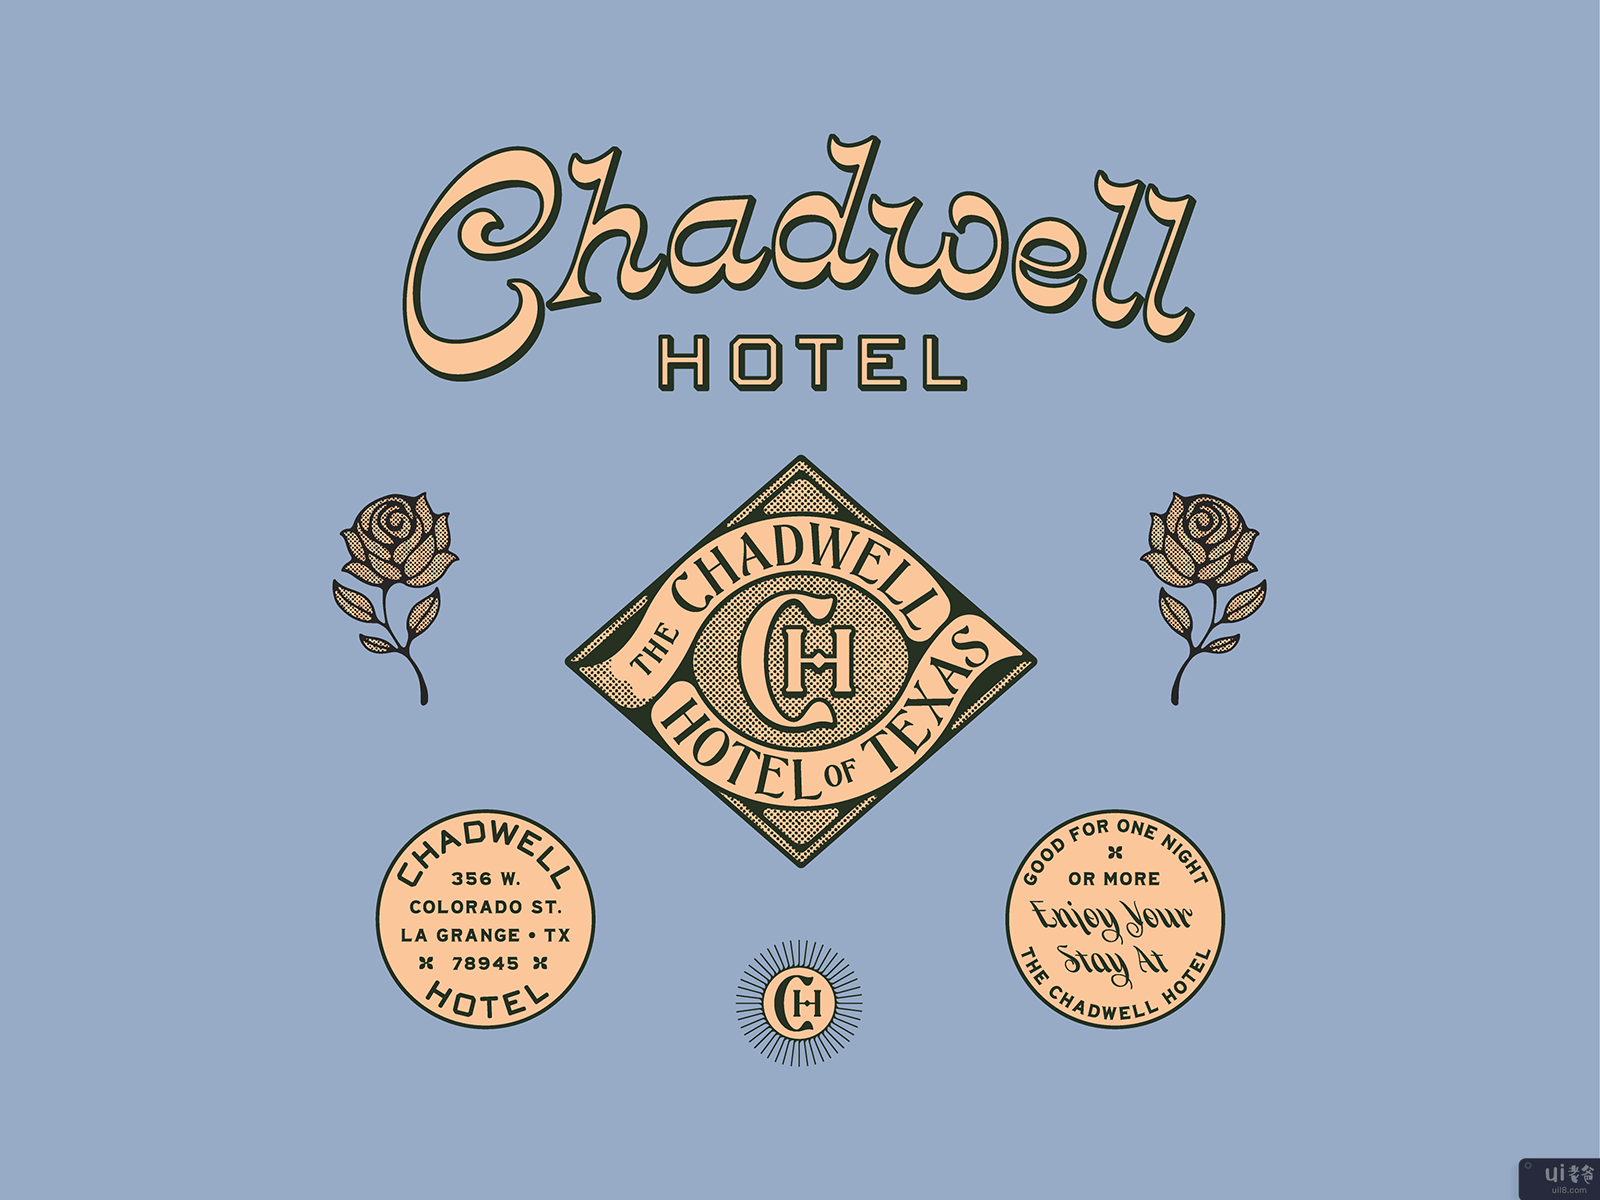 查德威尔酒店(Chadwell Hotel)插图